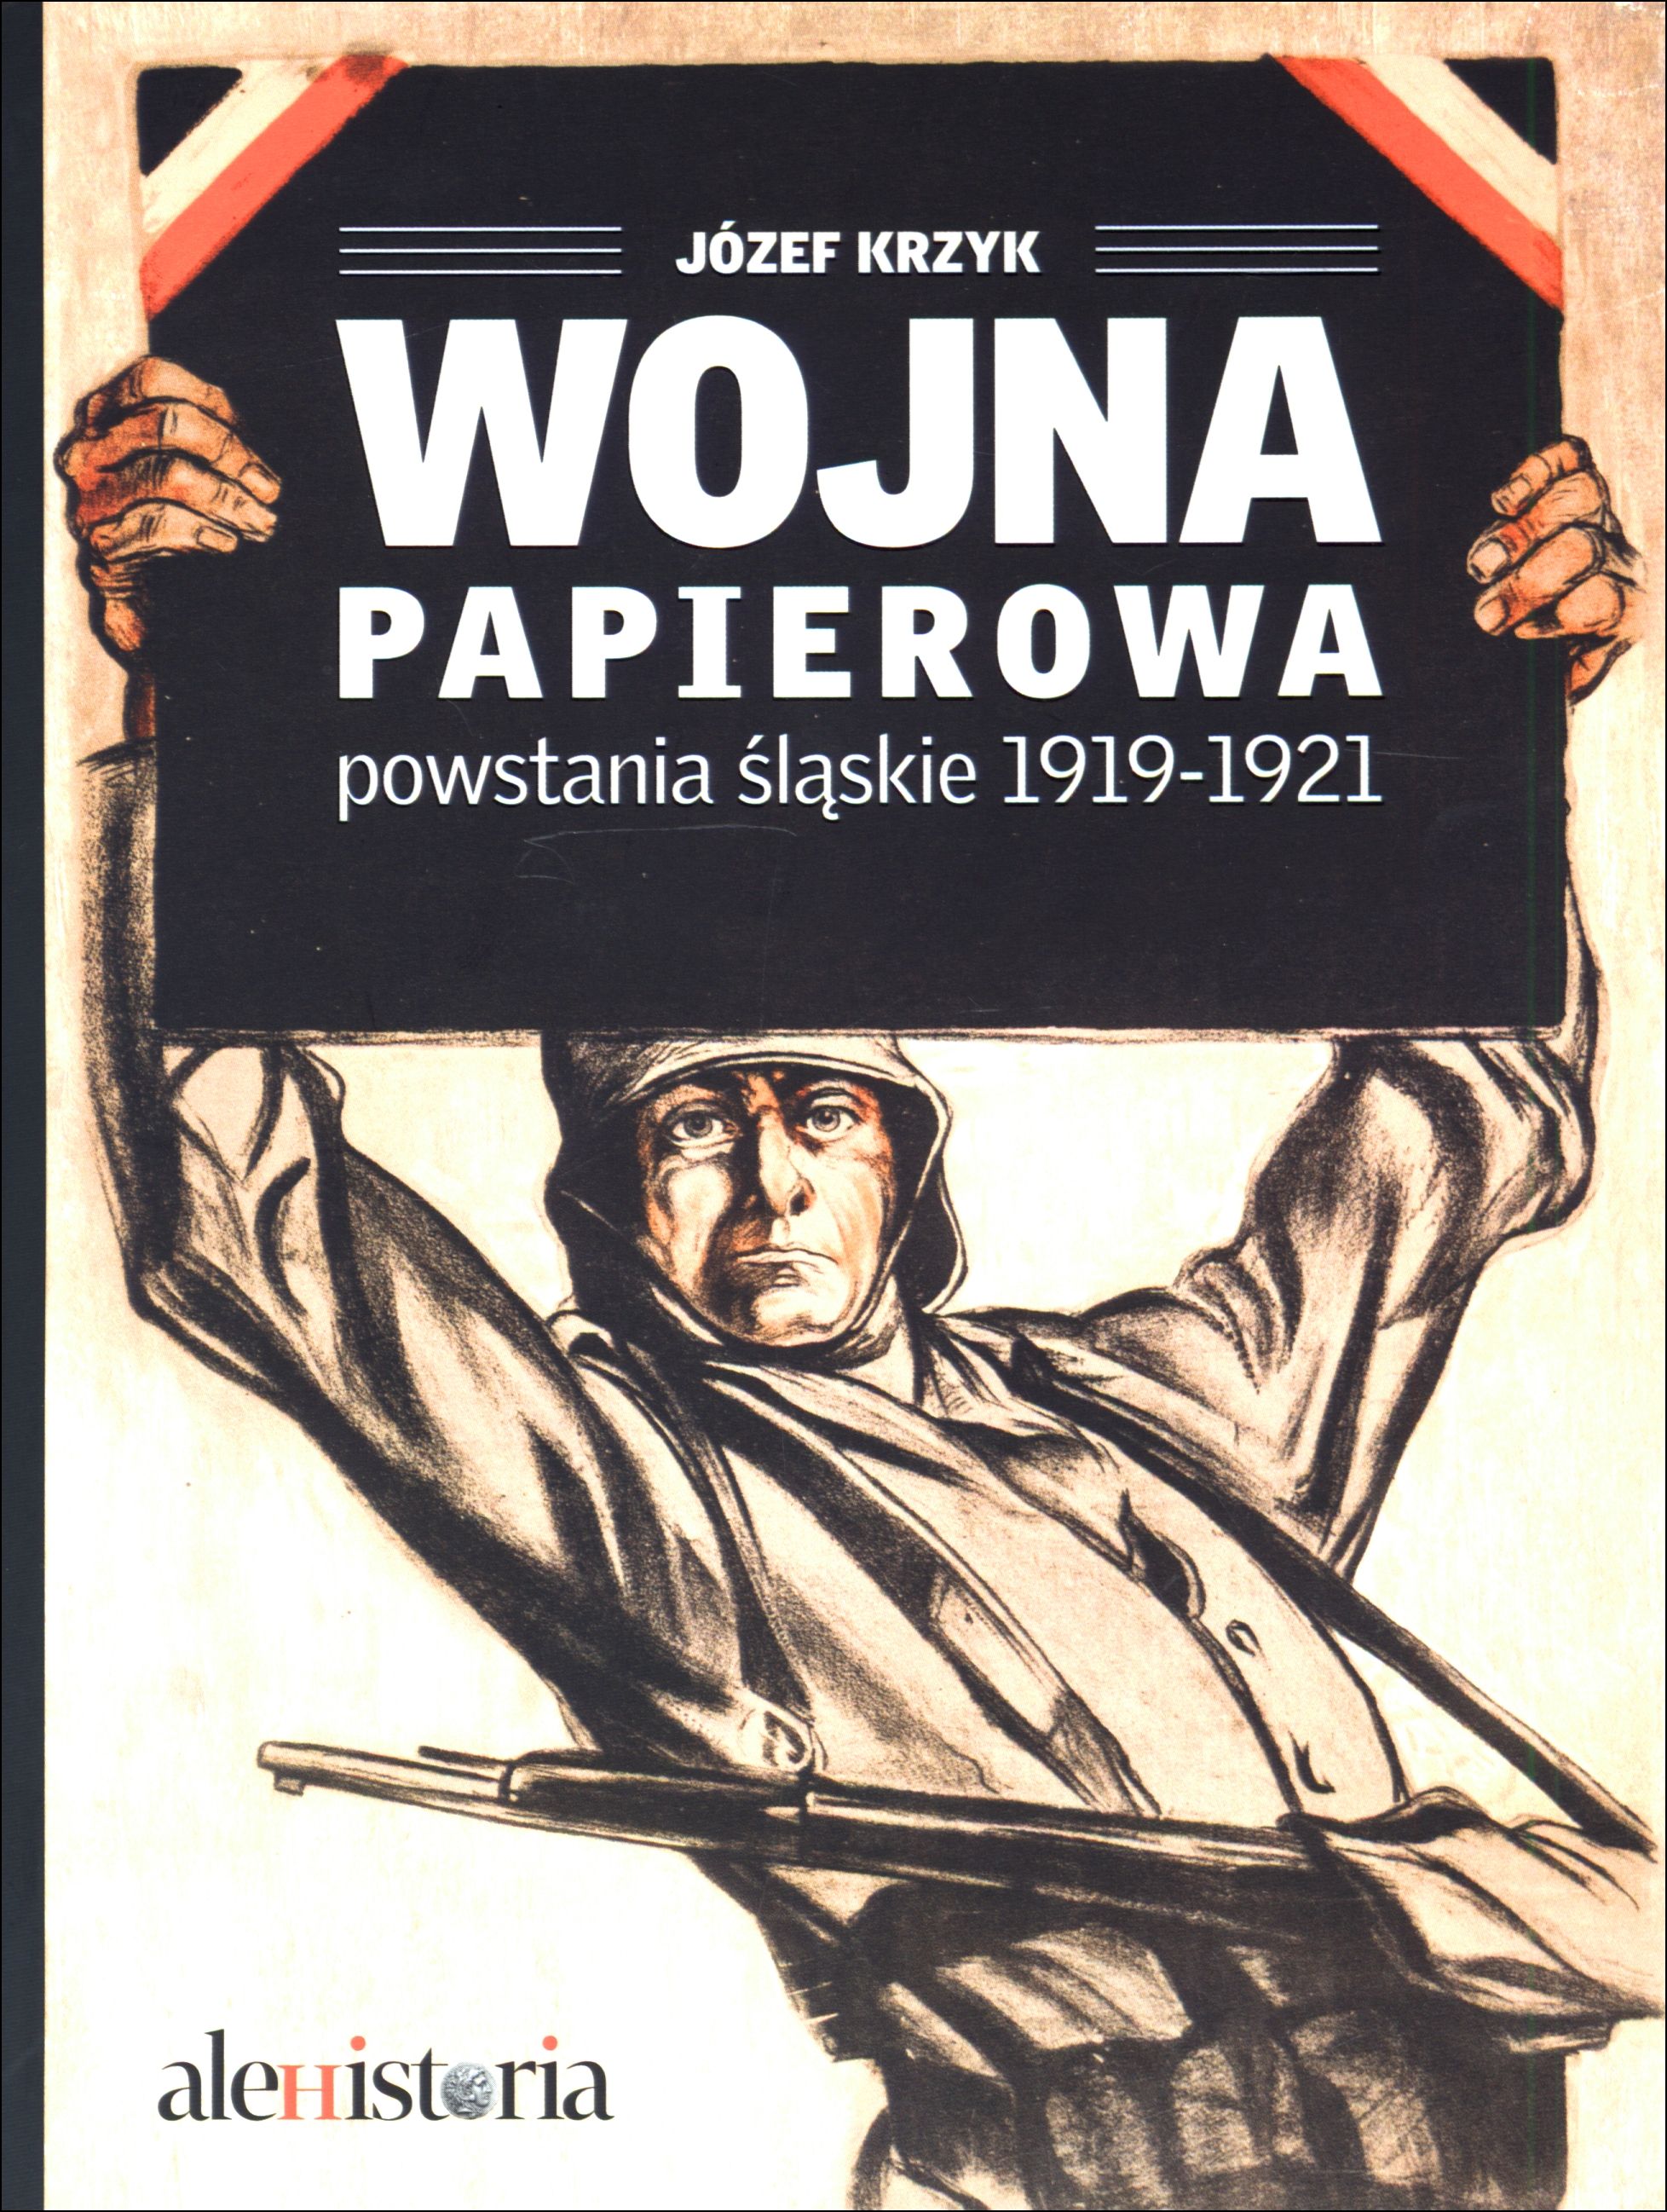 Wojna papierowa - zdjęcie okładki